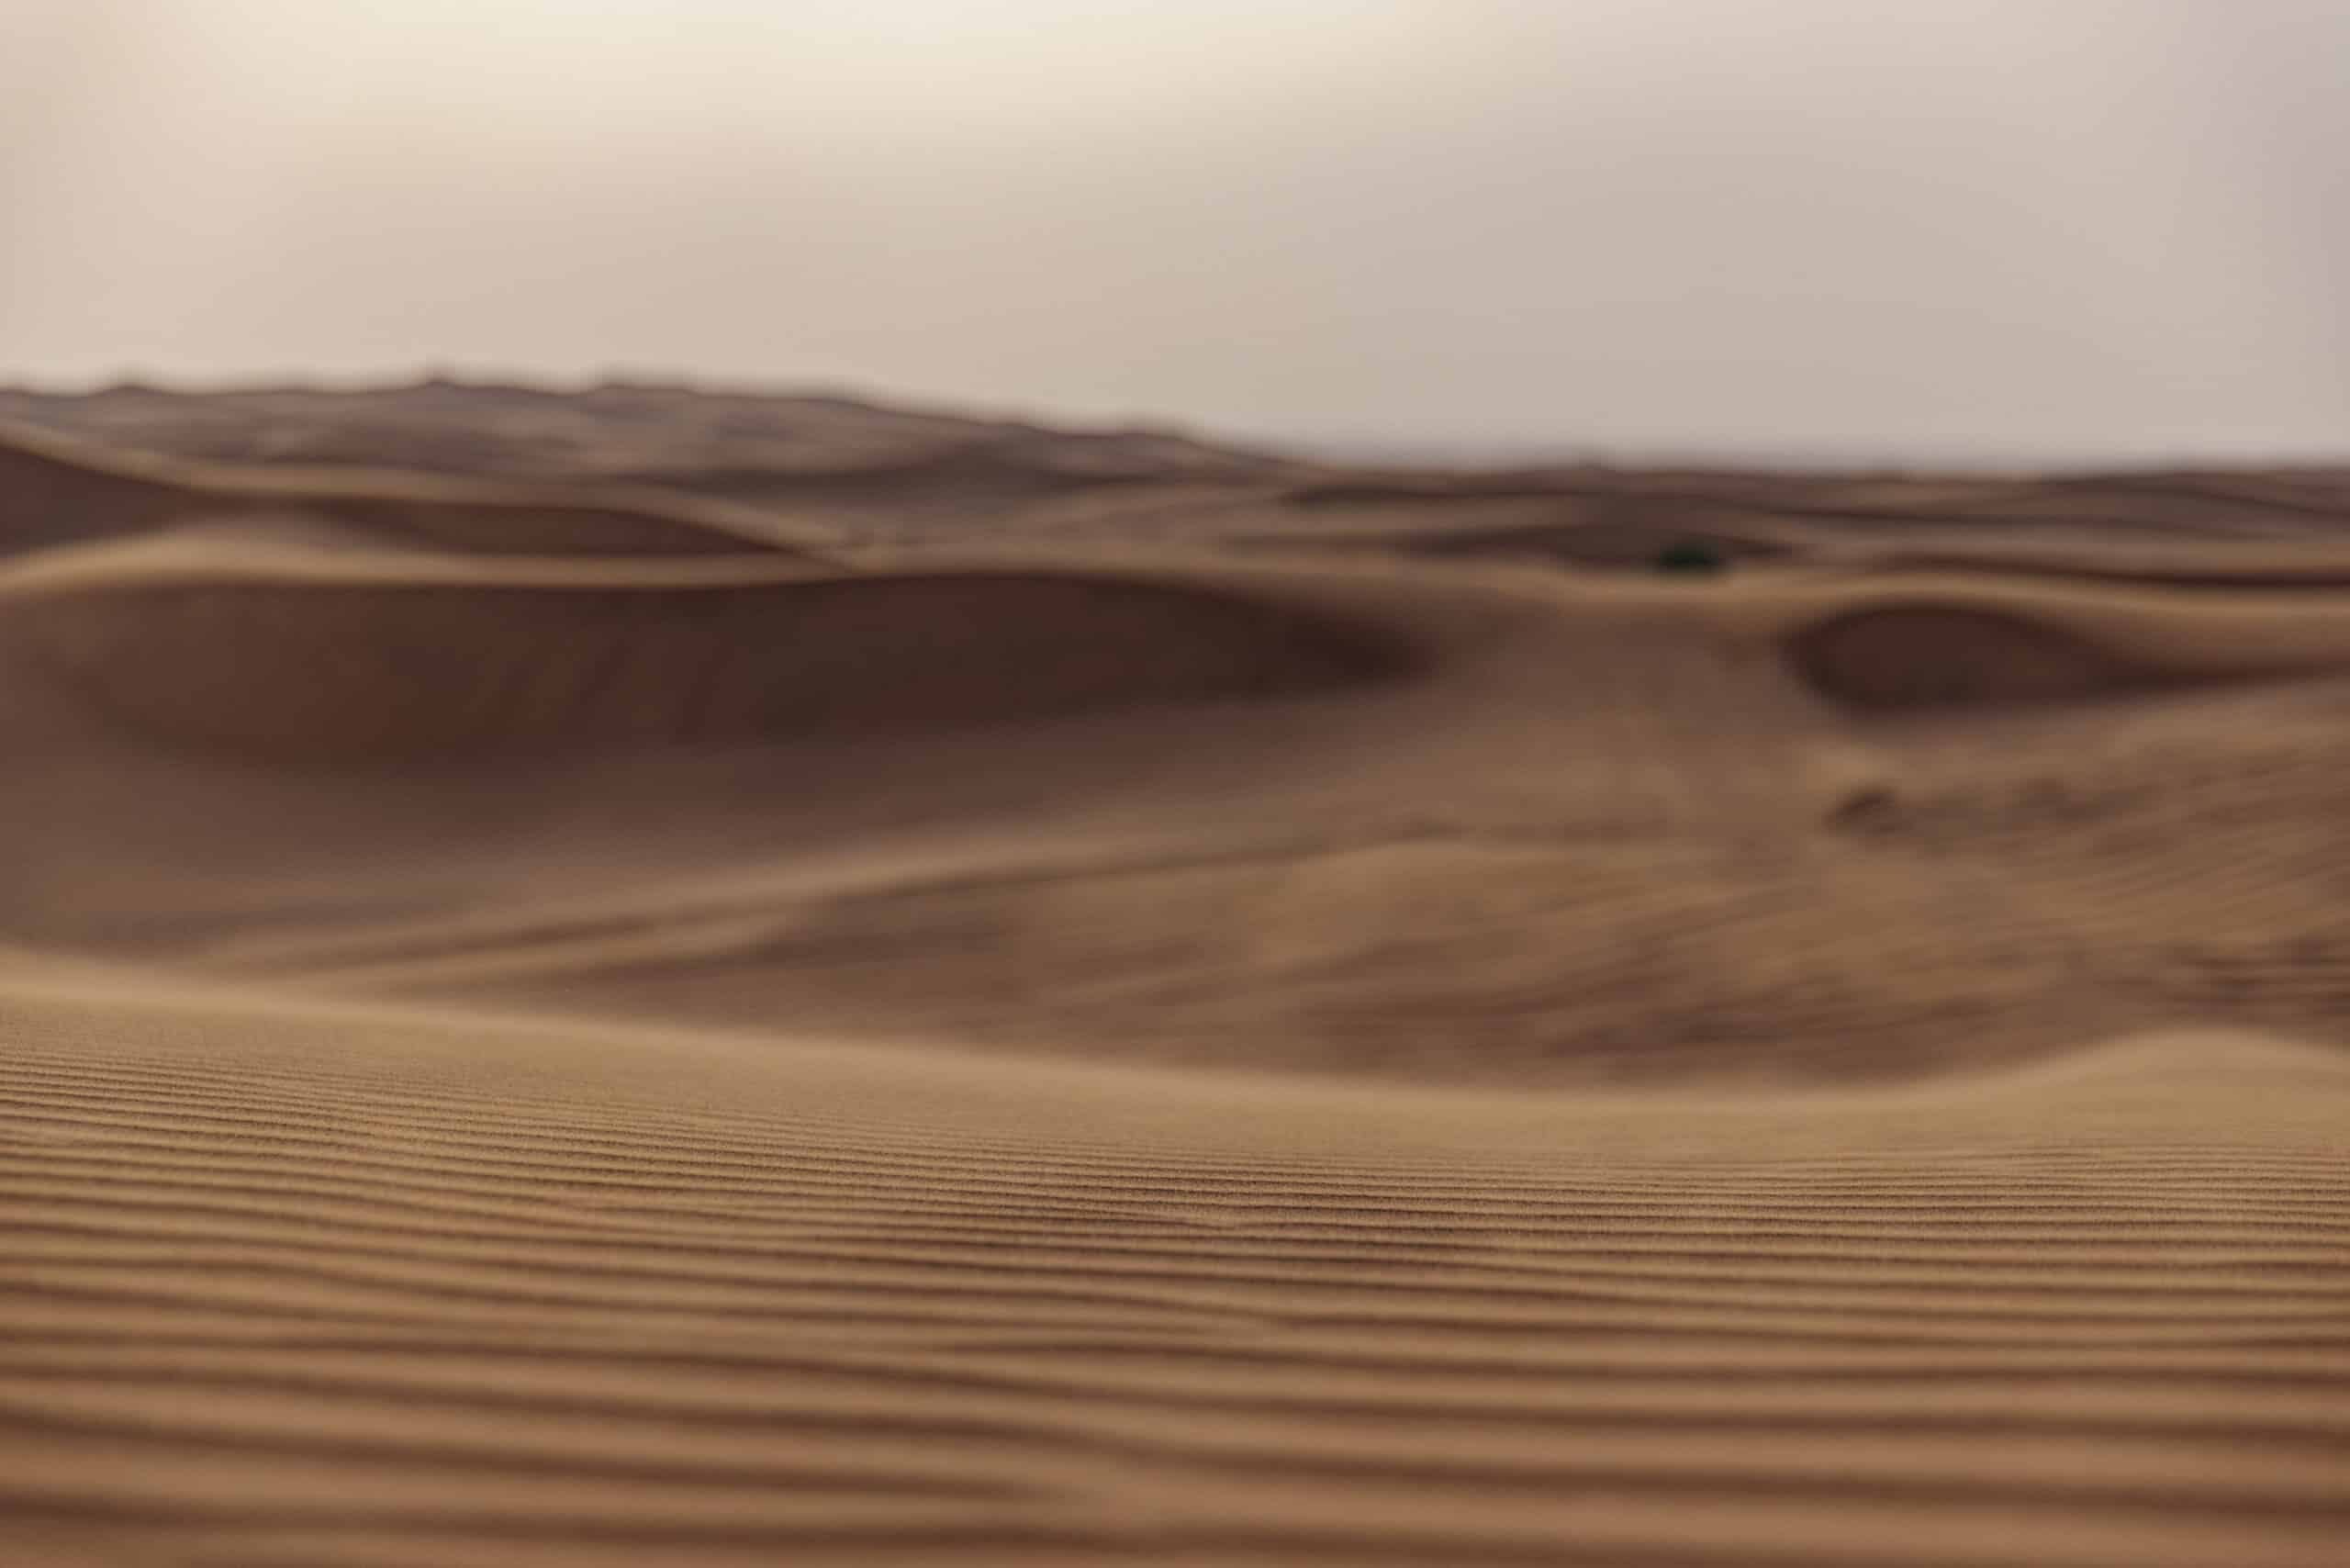 Sanft strukturierte Sanddünen mit sanften Graten und Vertiefungen, aus der Nähe betrachtet in einer warmen, dunstigen Wüstenlandschaft. Die gedämpften Töne und sanften Kurven schaffen eine ruhige Szene. © Fotografie Tomas Rodriguez